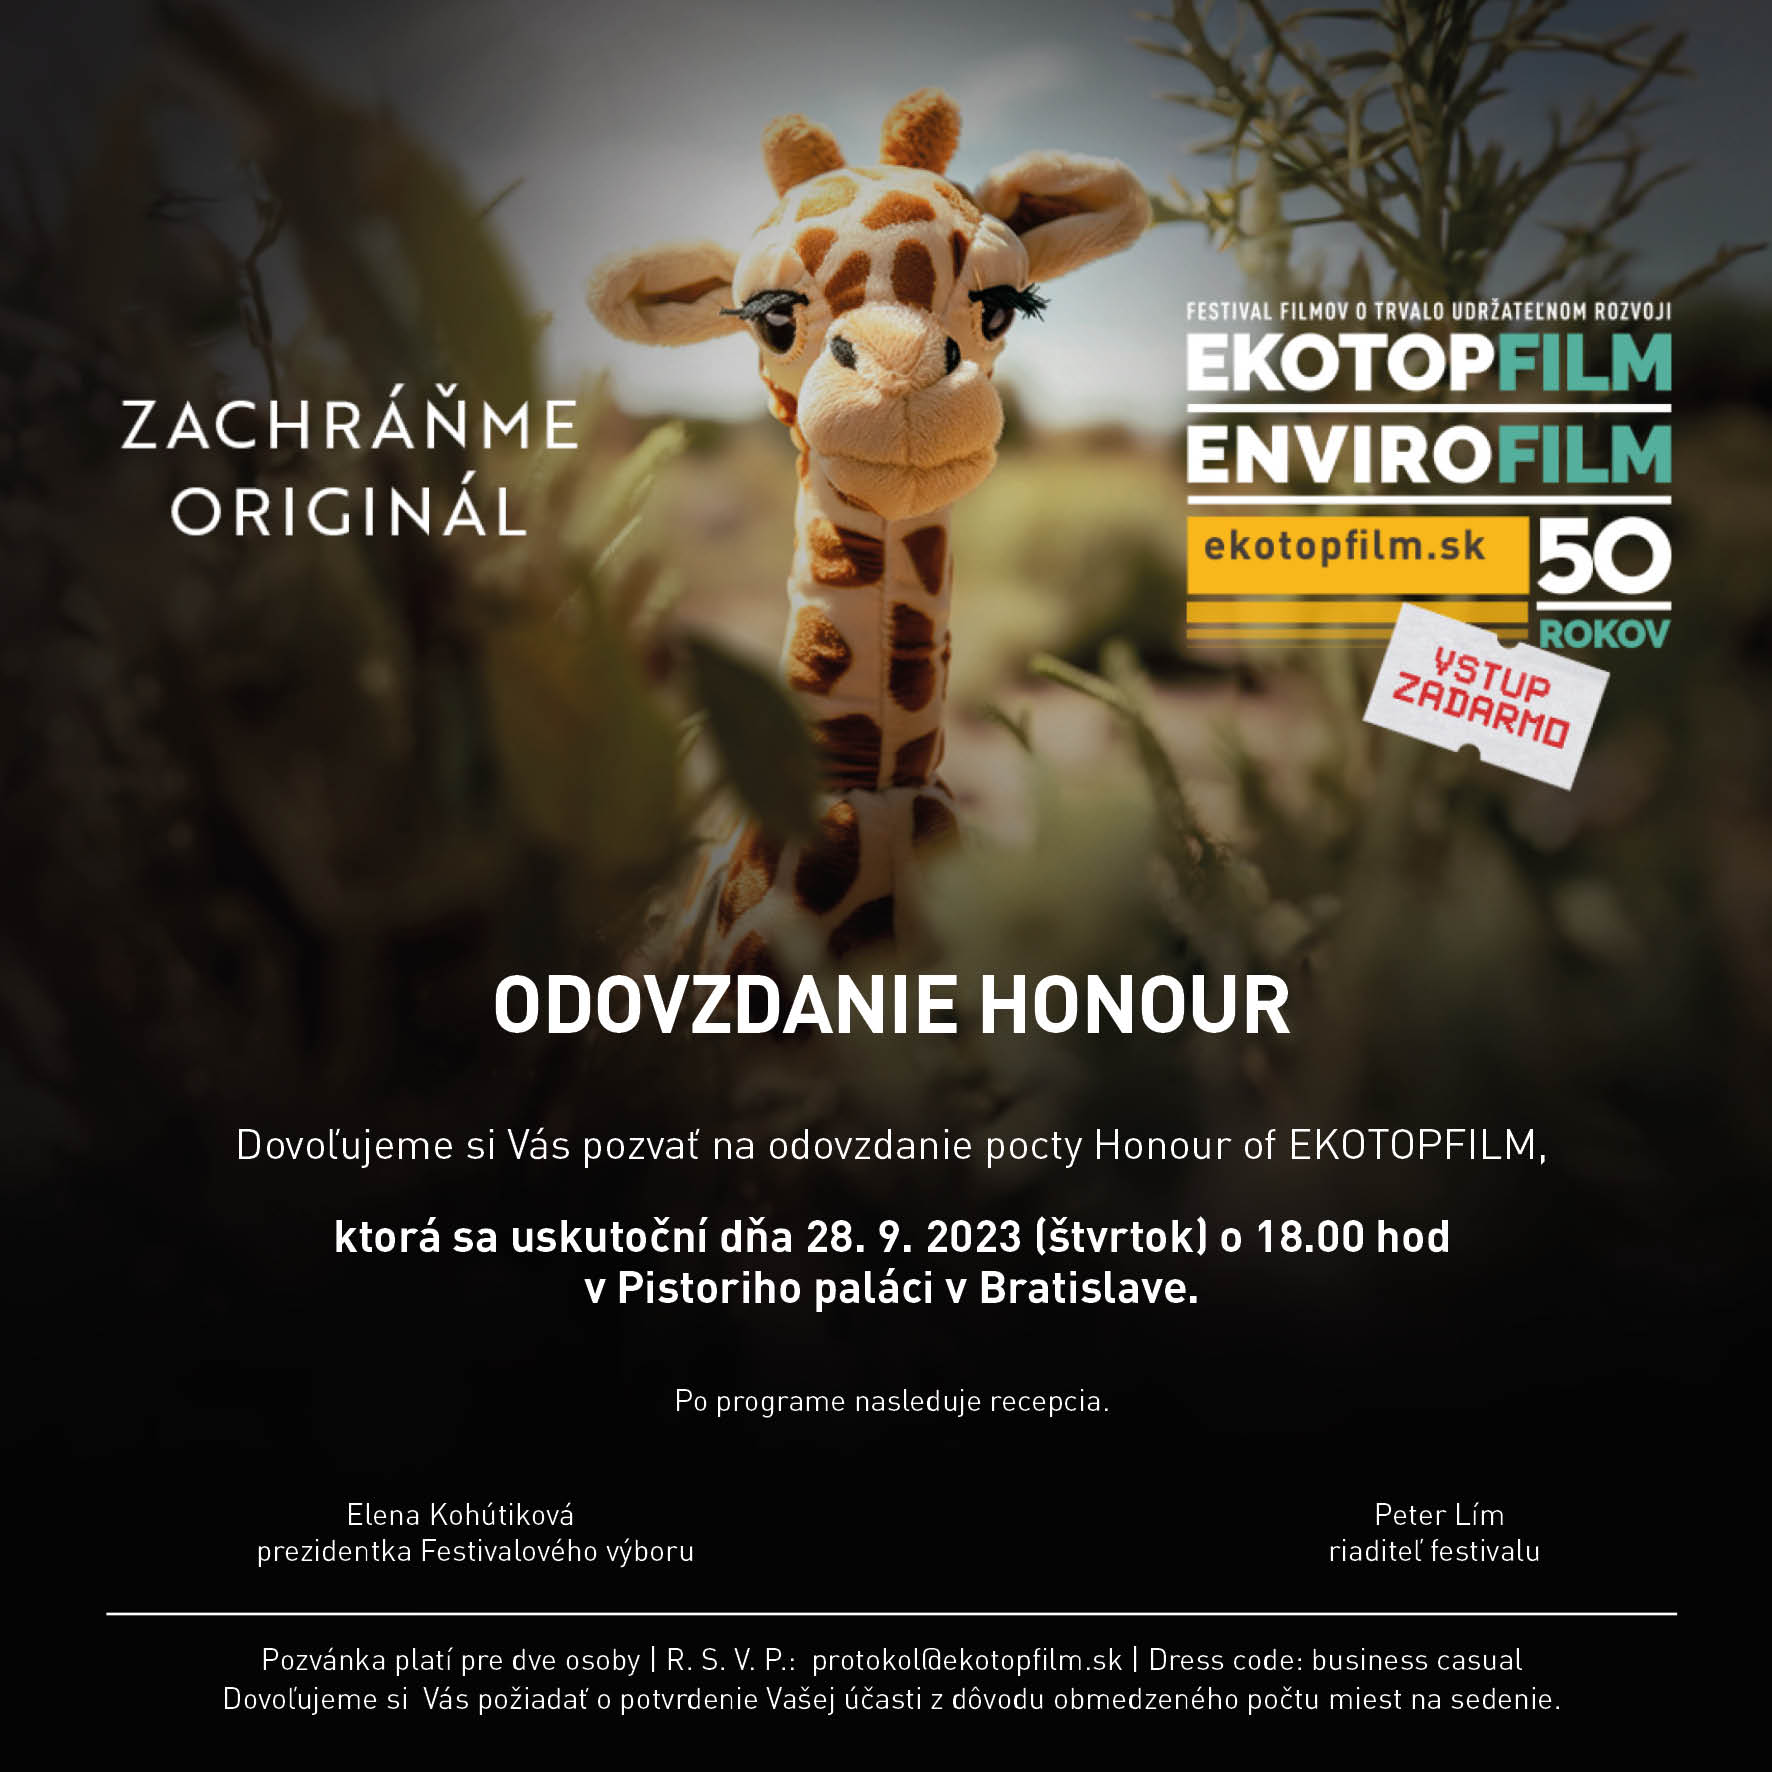 Najstarší filmový festival EKOTOPFILM - ENVIROFILM oslavuje 50 rokov, štartuje 25. septembra v Bratislave a v Banskej Bystrici!